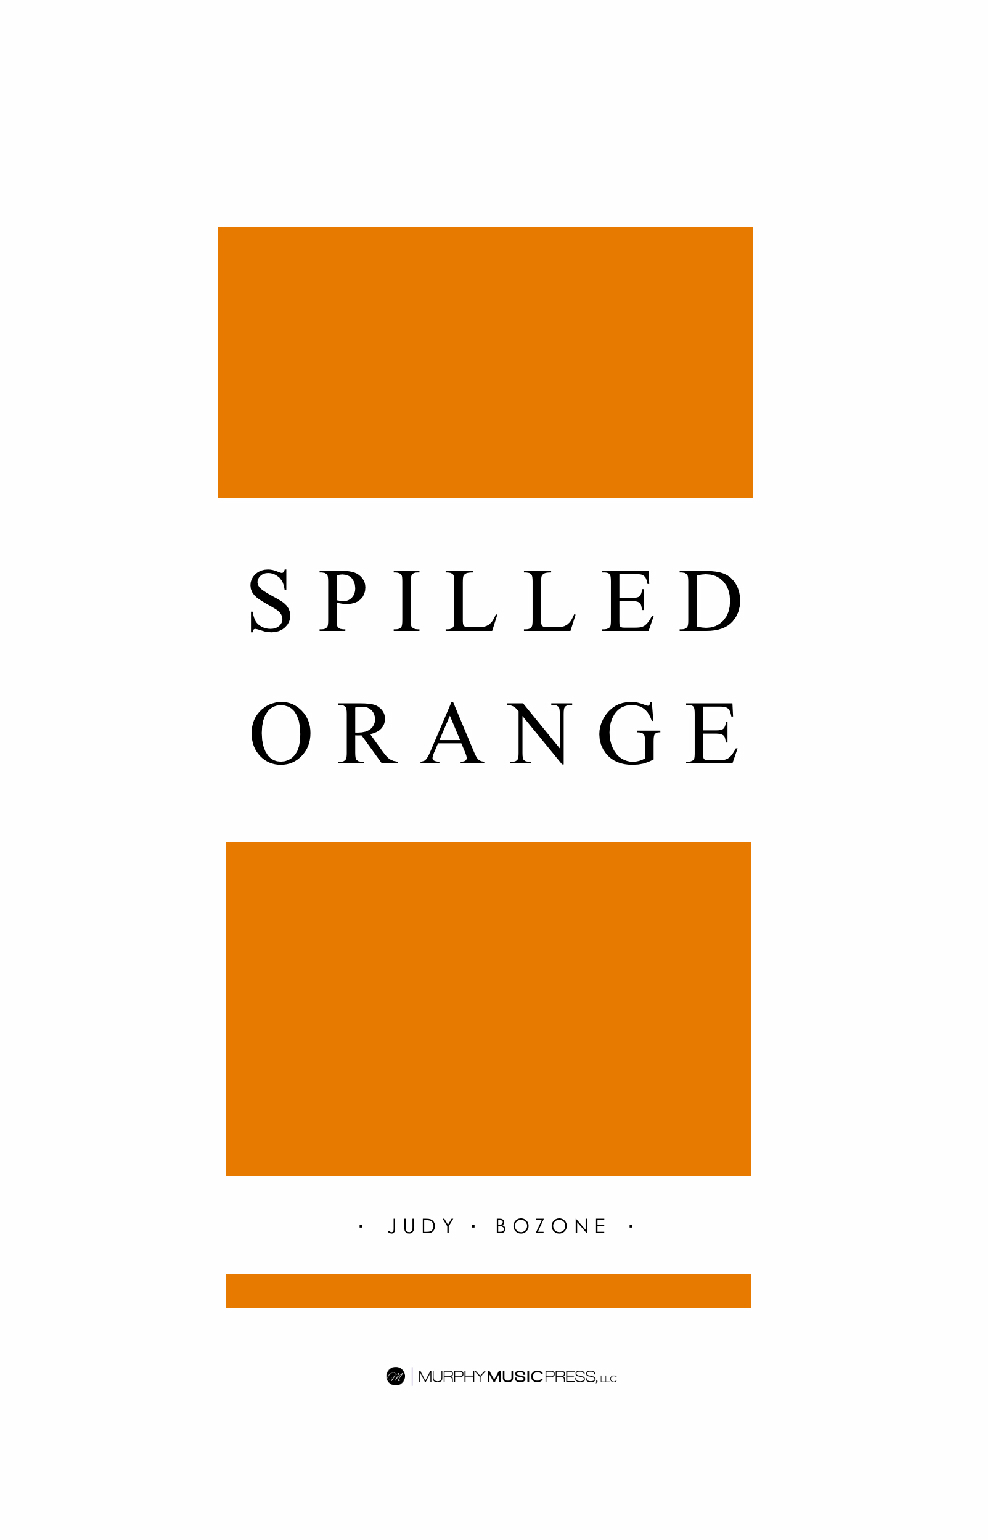 Spilled Orange by Judy Bozone